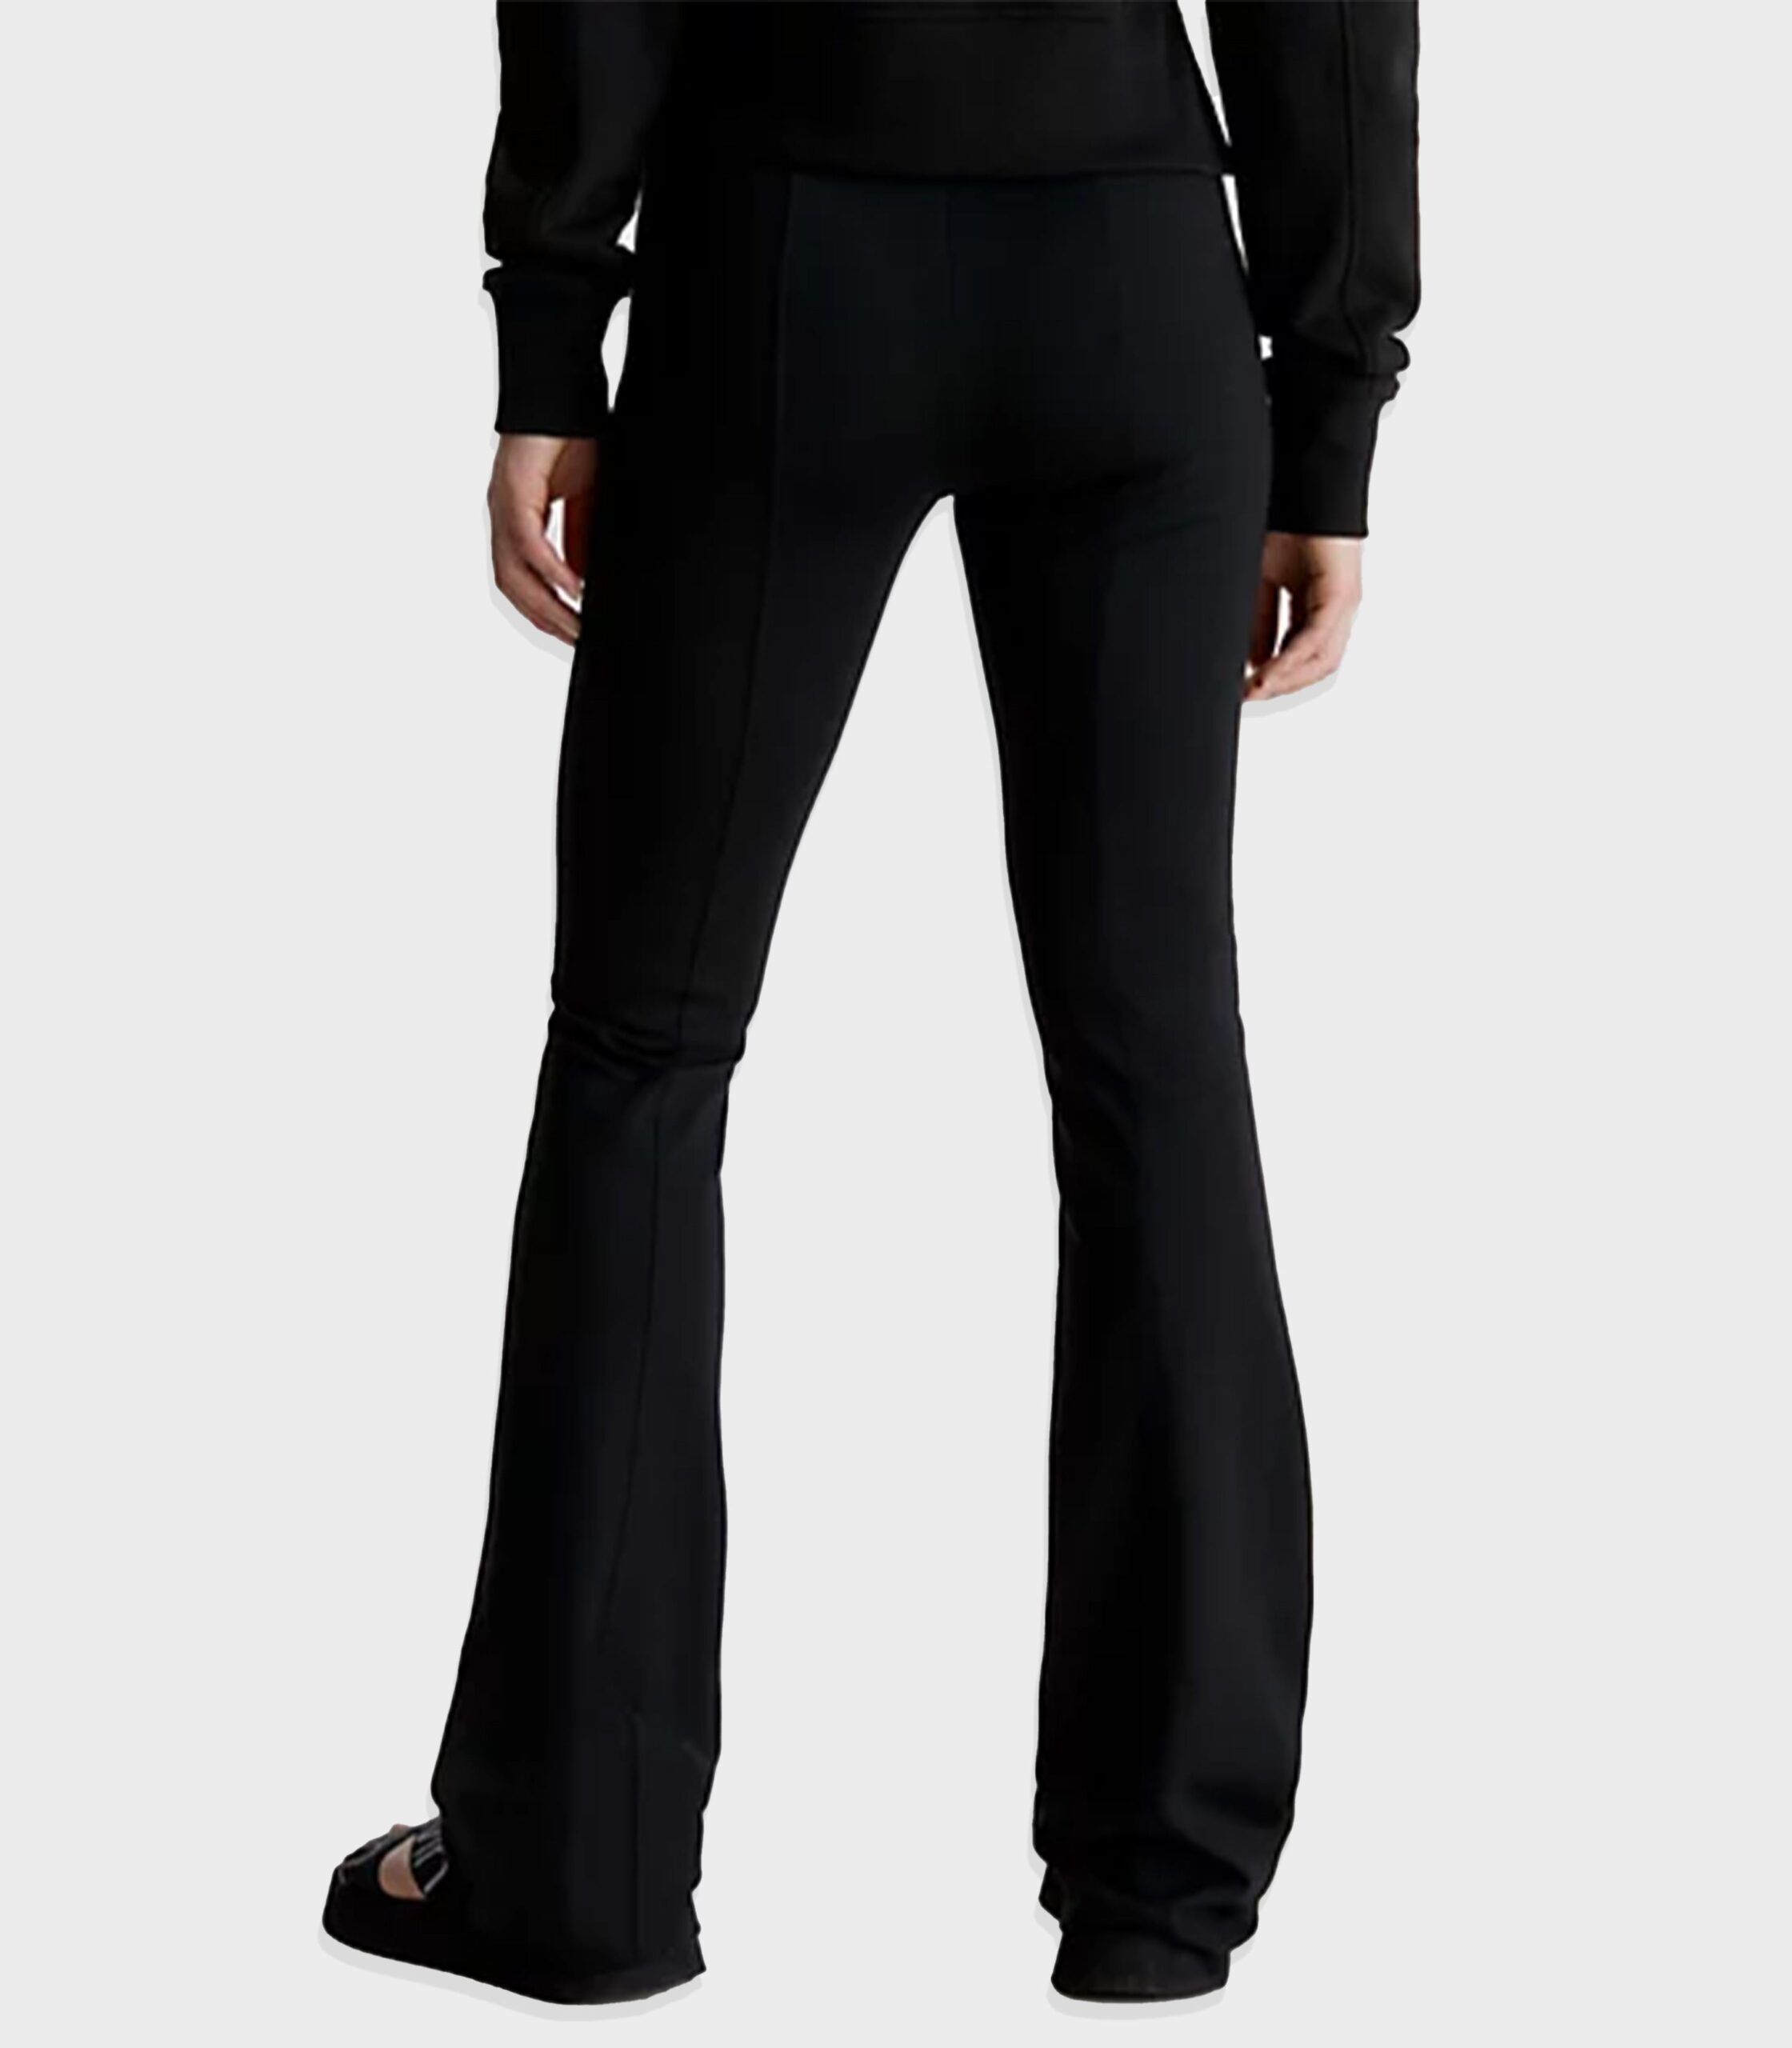 tape Klein milano Jeans Calvin women leggings – flare Egypt – – Ofive